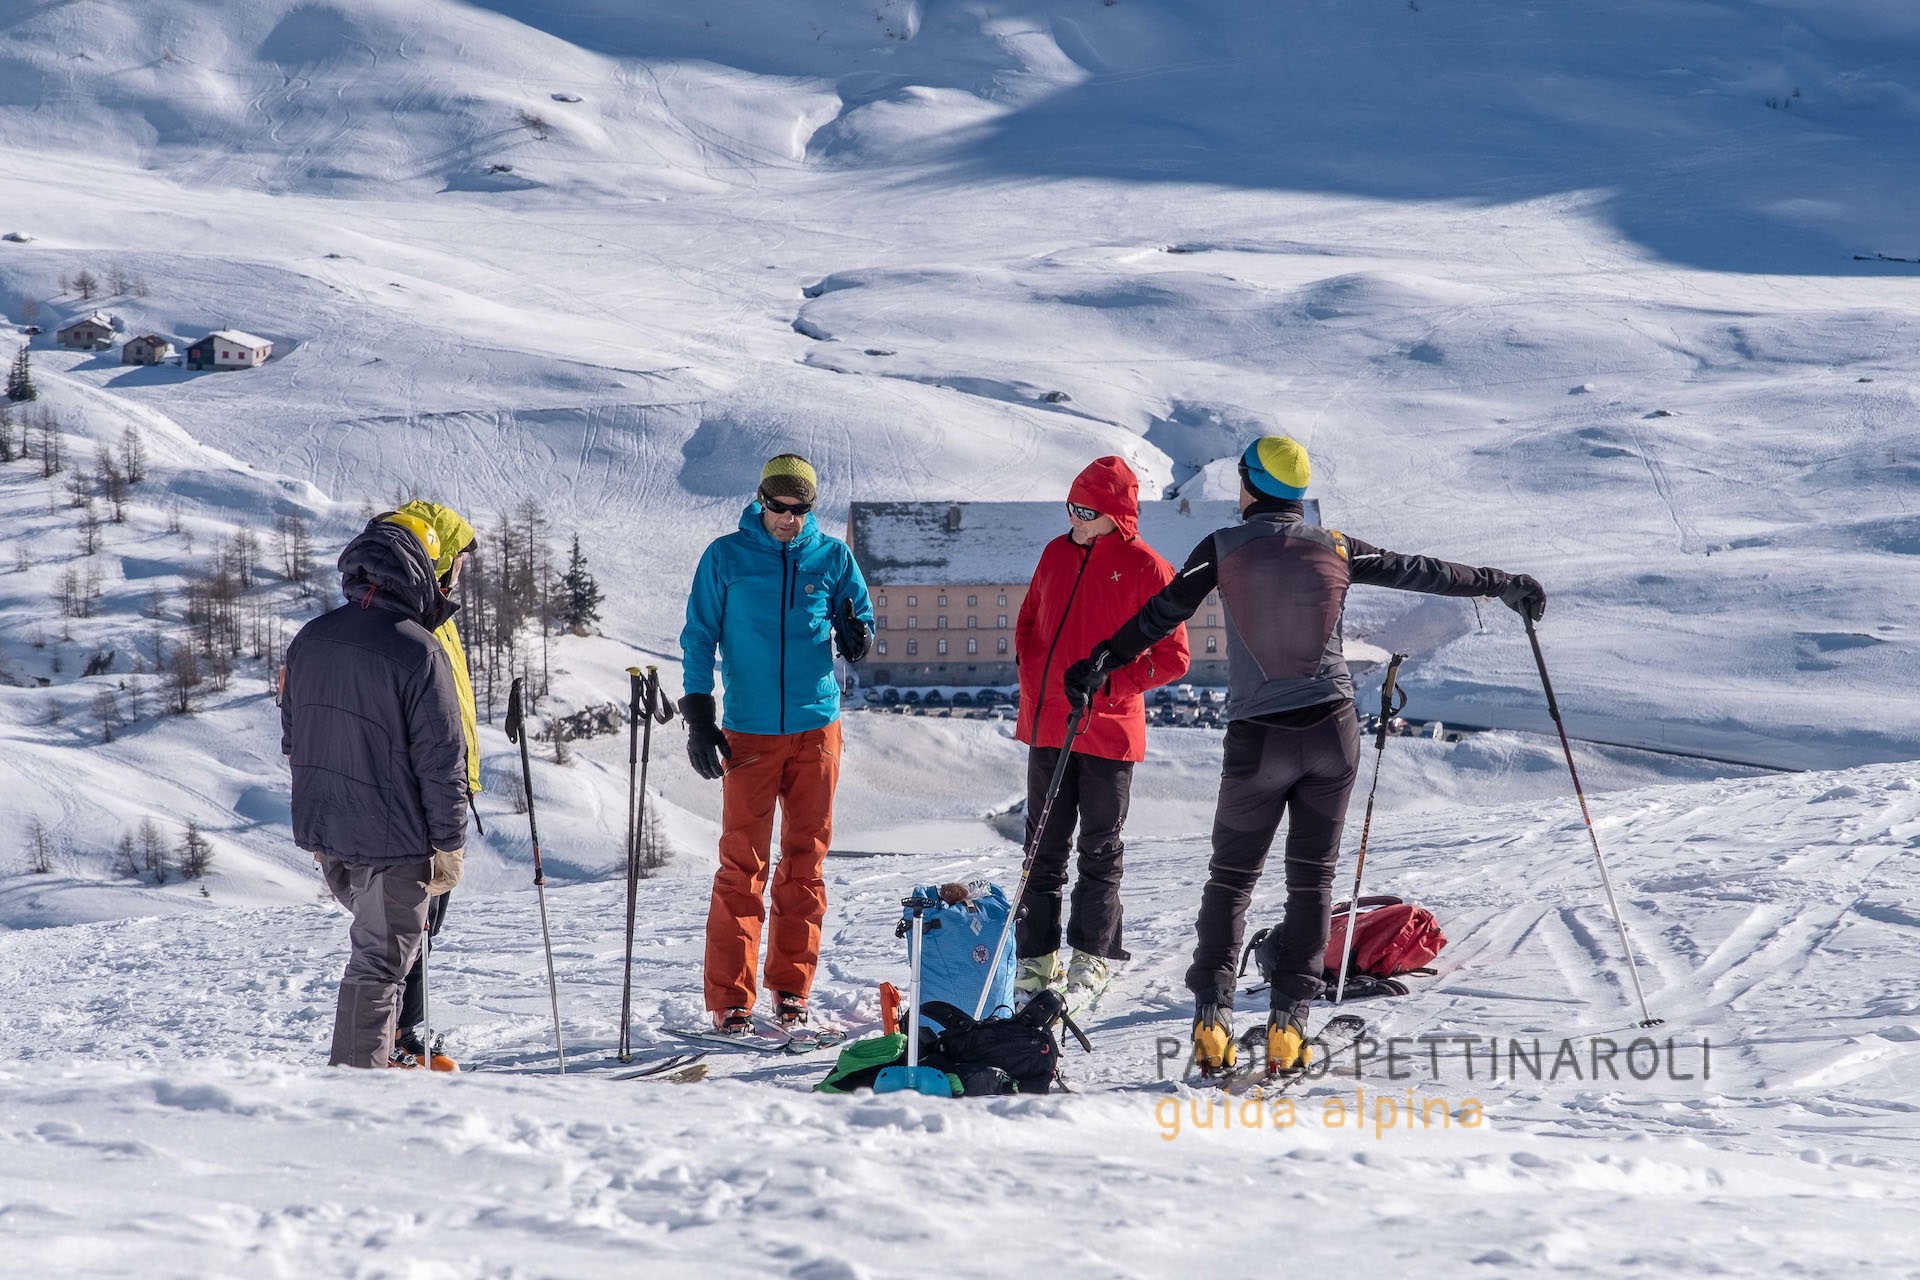 varie - 1 di 1-scialpinismo_paolo pettinaroli guida alpina